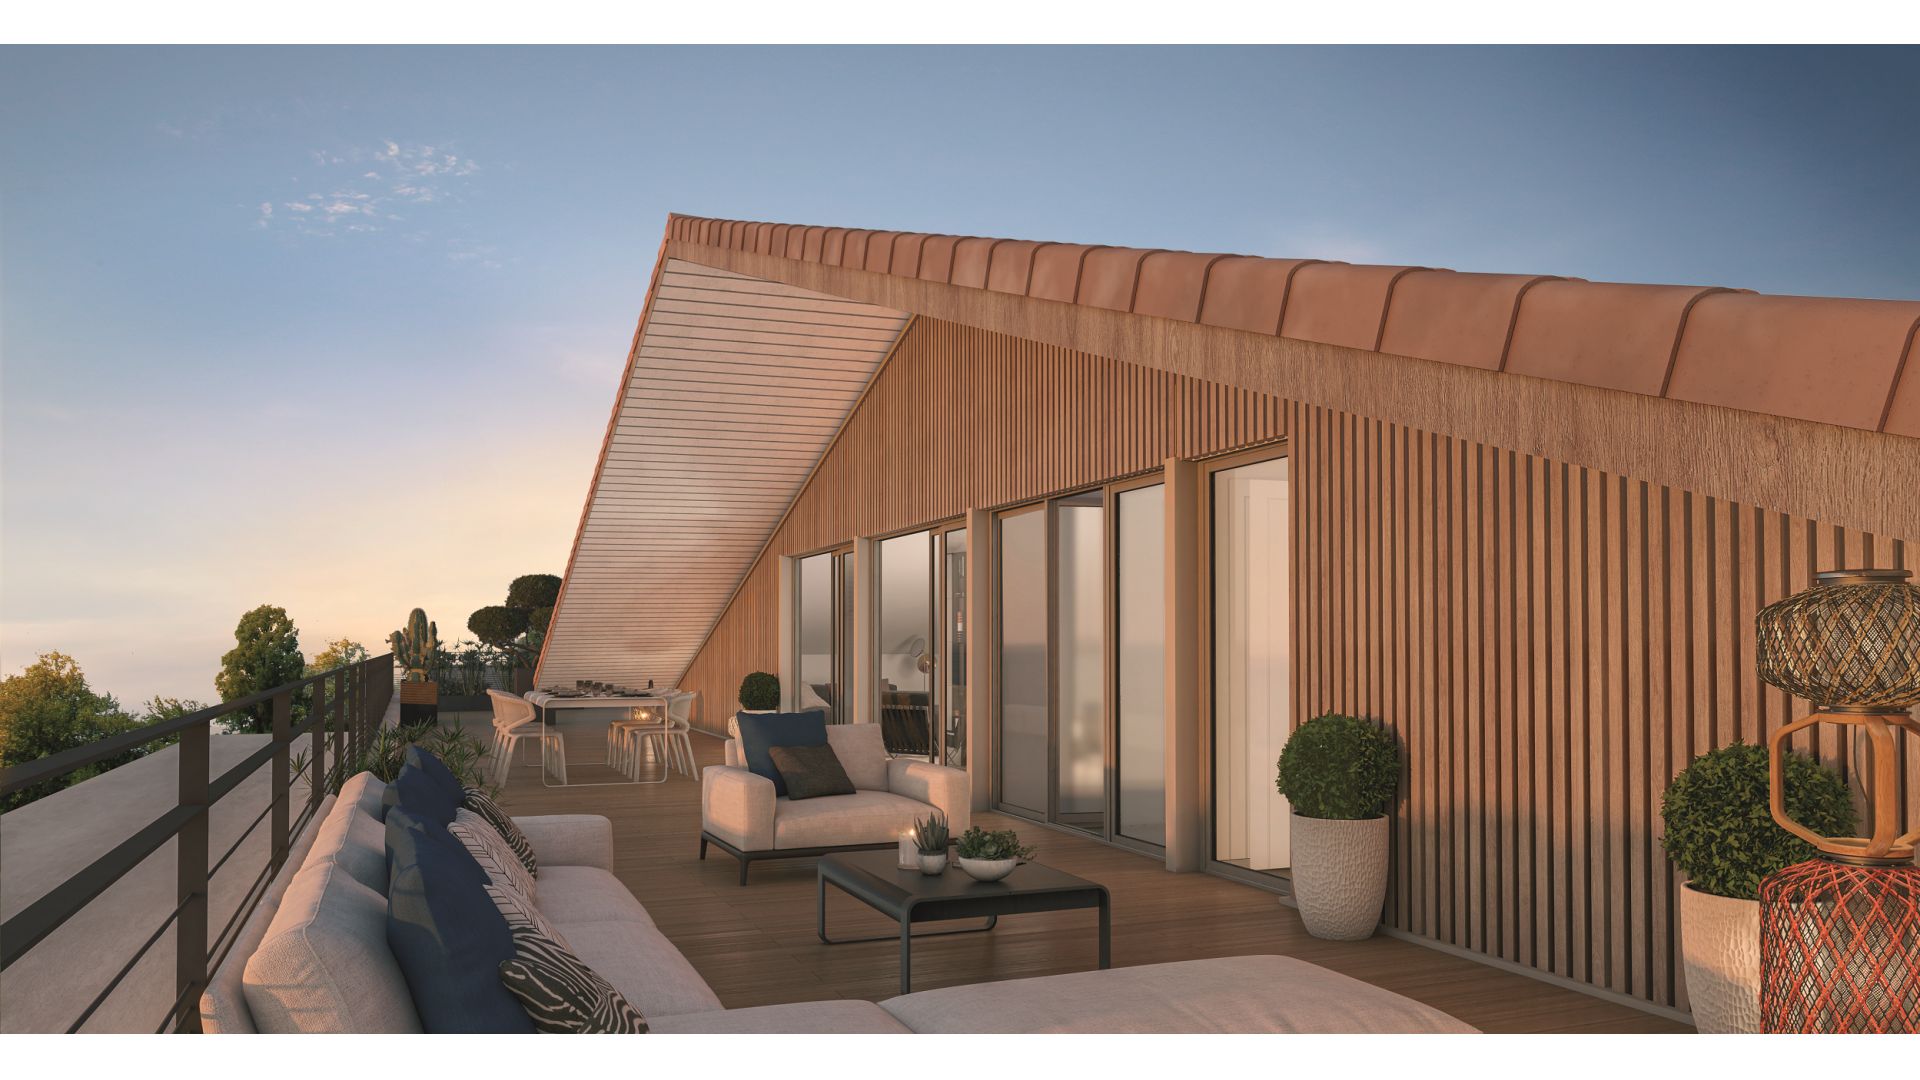 Greencity immobilier - achat appartements neufs du T2 au T5 - Résidence Les Terrasses de Piquessary - Boucau 64340  - vue terrasse